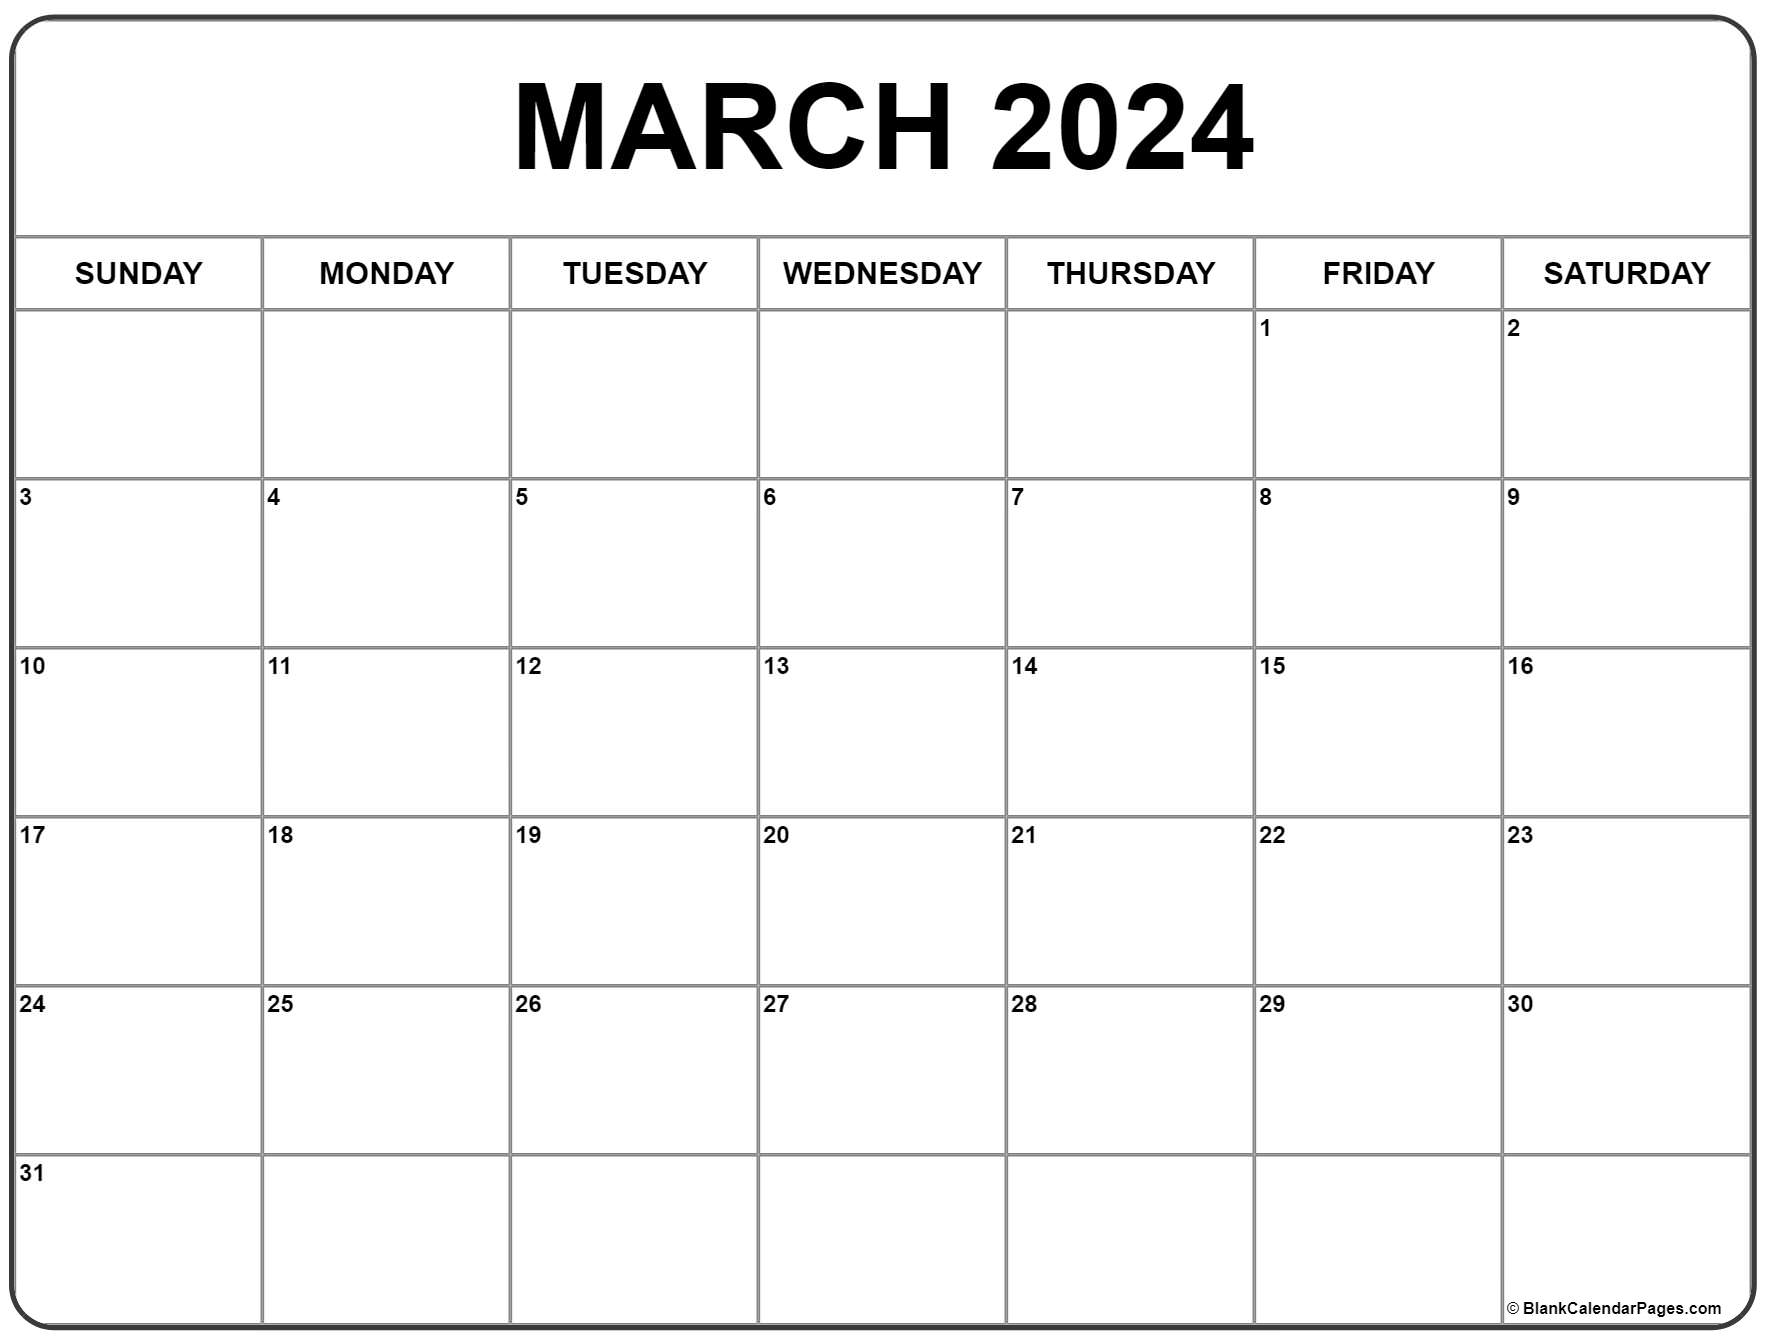 March 2024 Calendar | Free Printable Calendar for Calendar March 2024 Printable